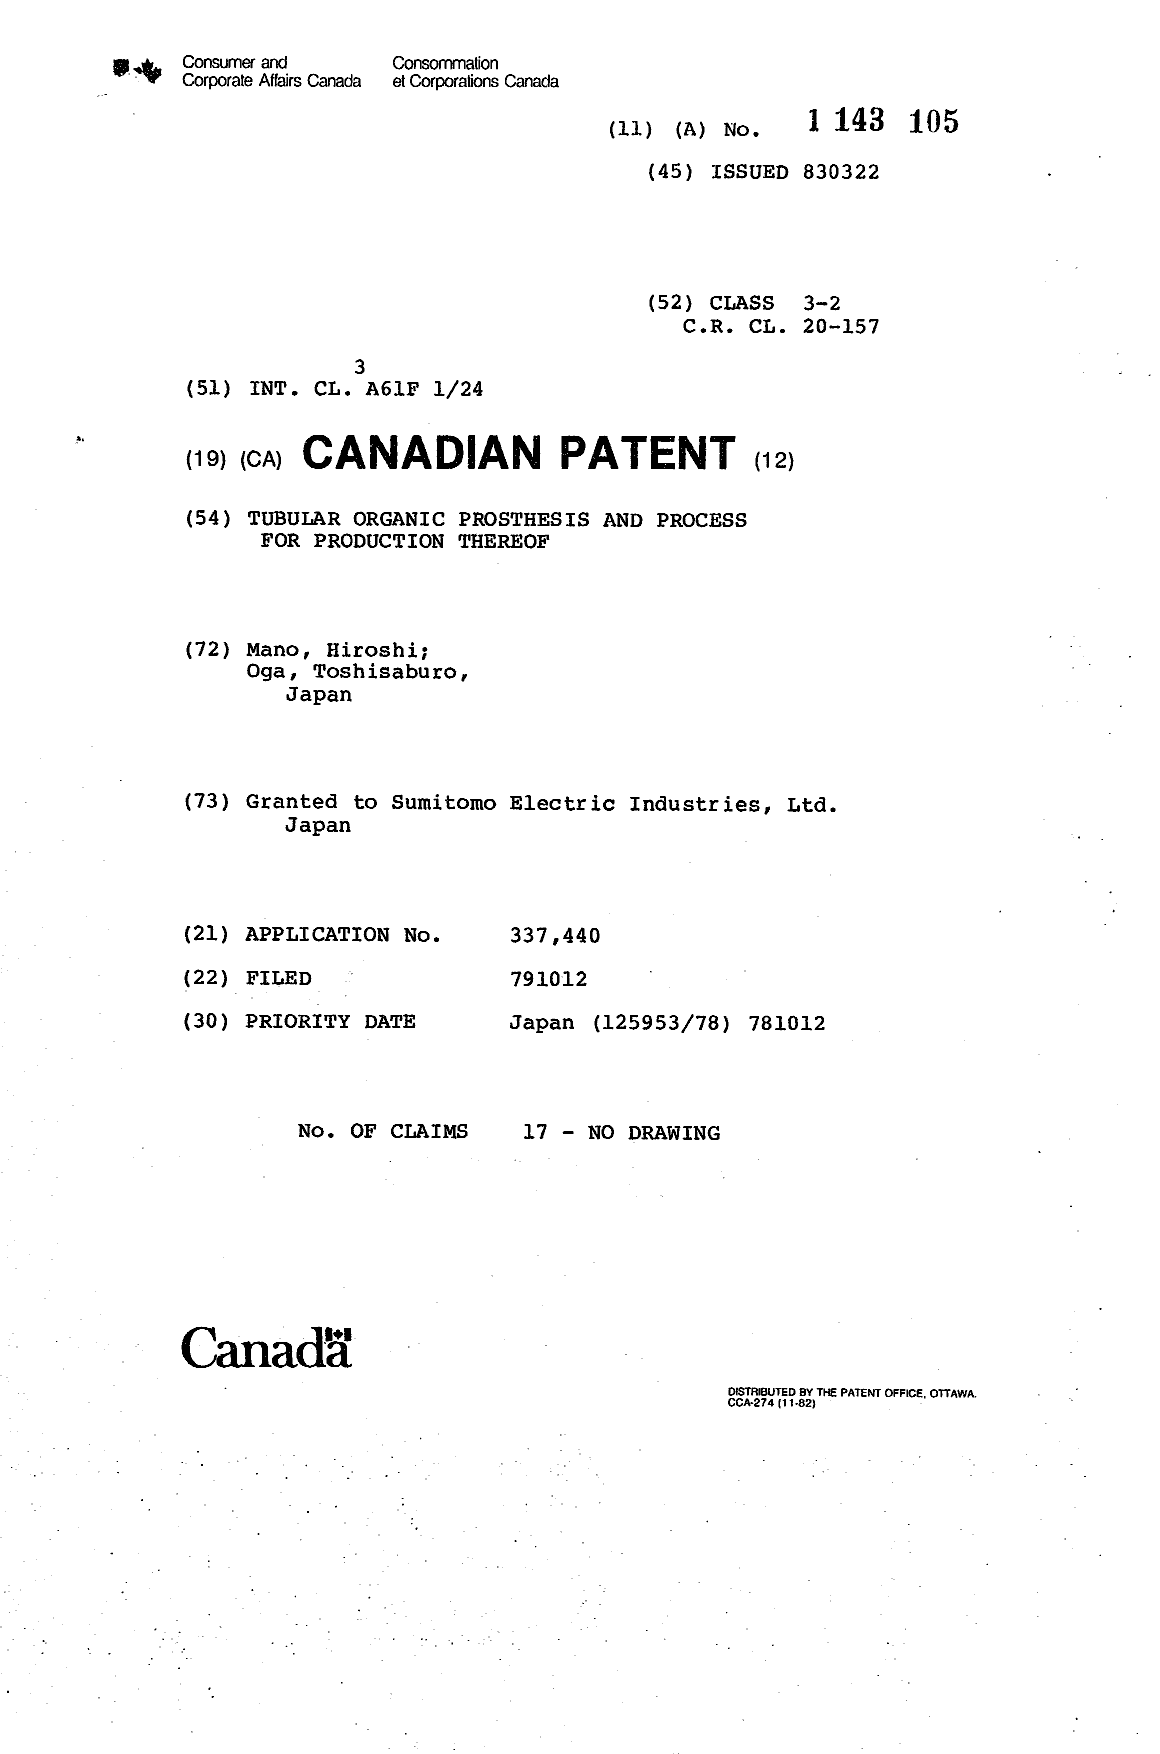 Document de brevet canadien 1143105. Page couverture 19940106. Image 1 de 1